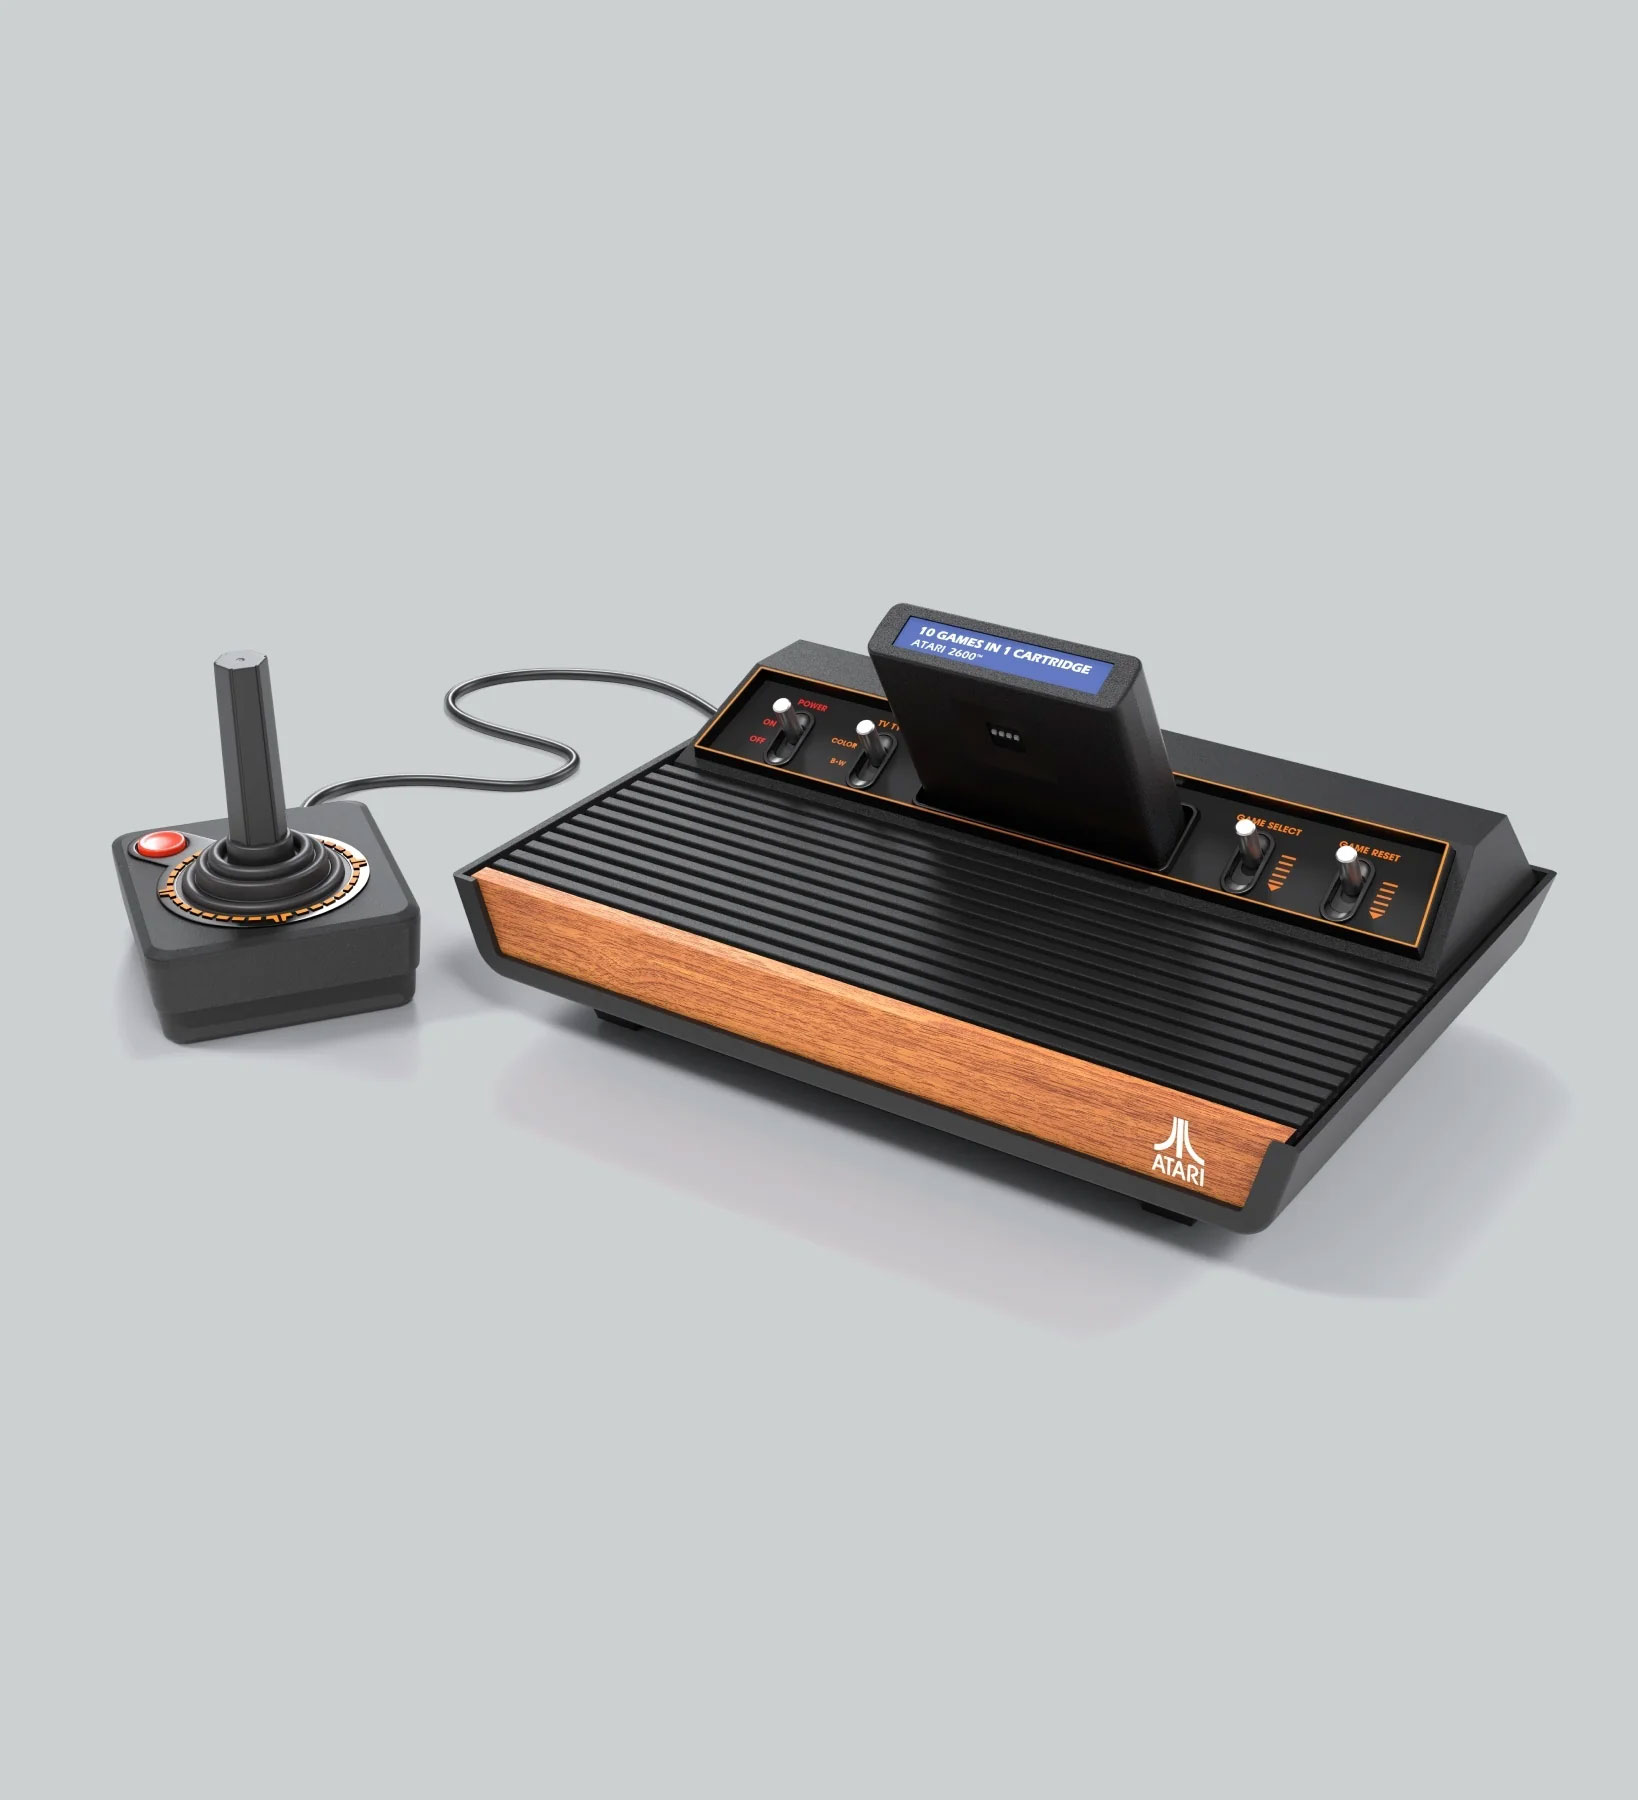 【製品】ゲーム機「Atari 2600＋」をAtariが発表。Atari 2600の形をしたAtari 7800互換機